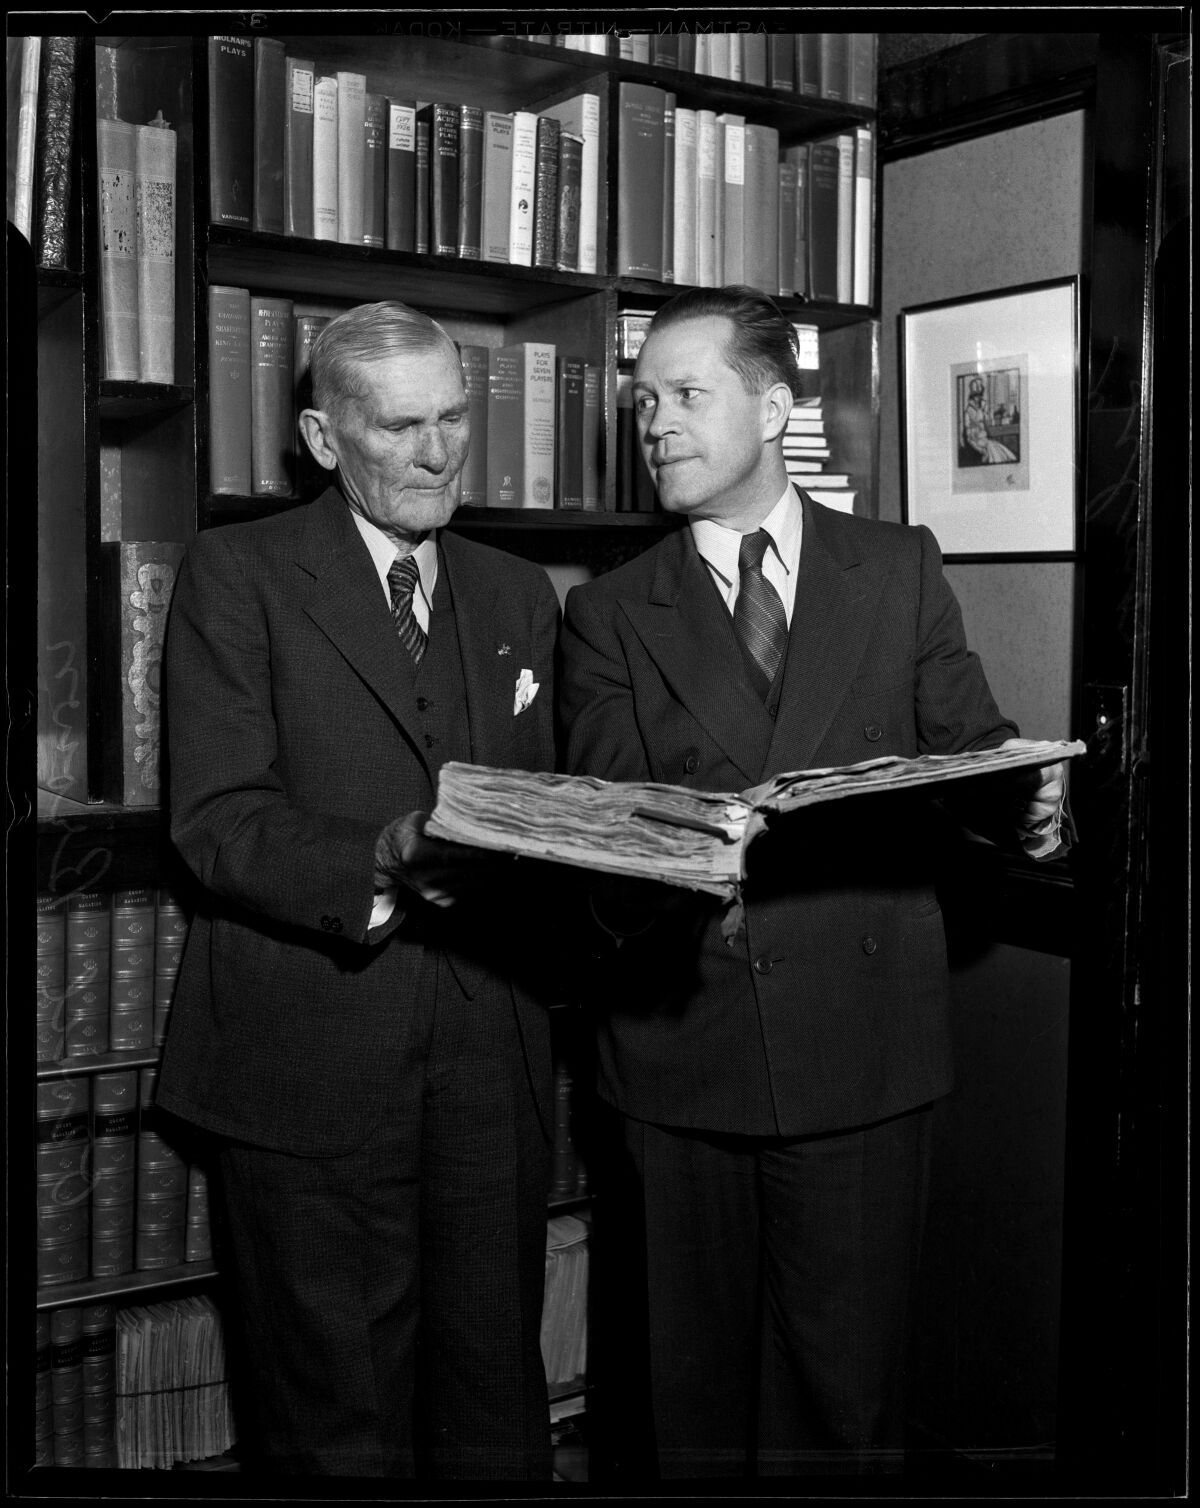 Auf einem Schwarz-Weiß-Foto stehen zwei Männer vor einem Bücherregal, einer hält ein großes aufgeschlagenes Buch. 